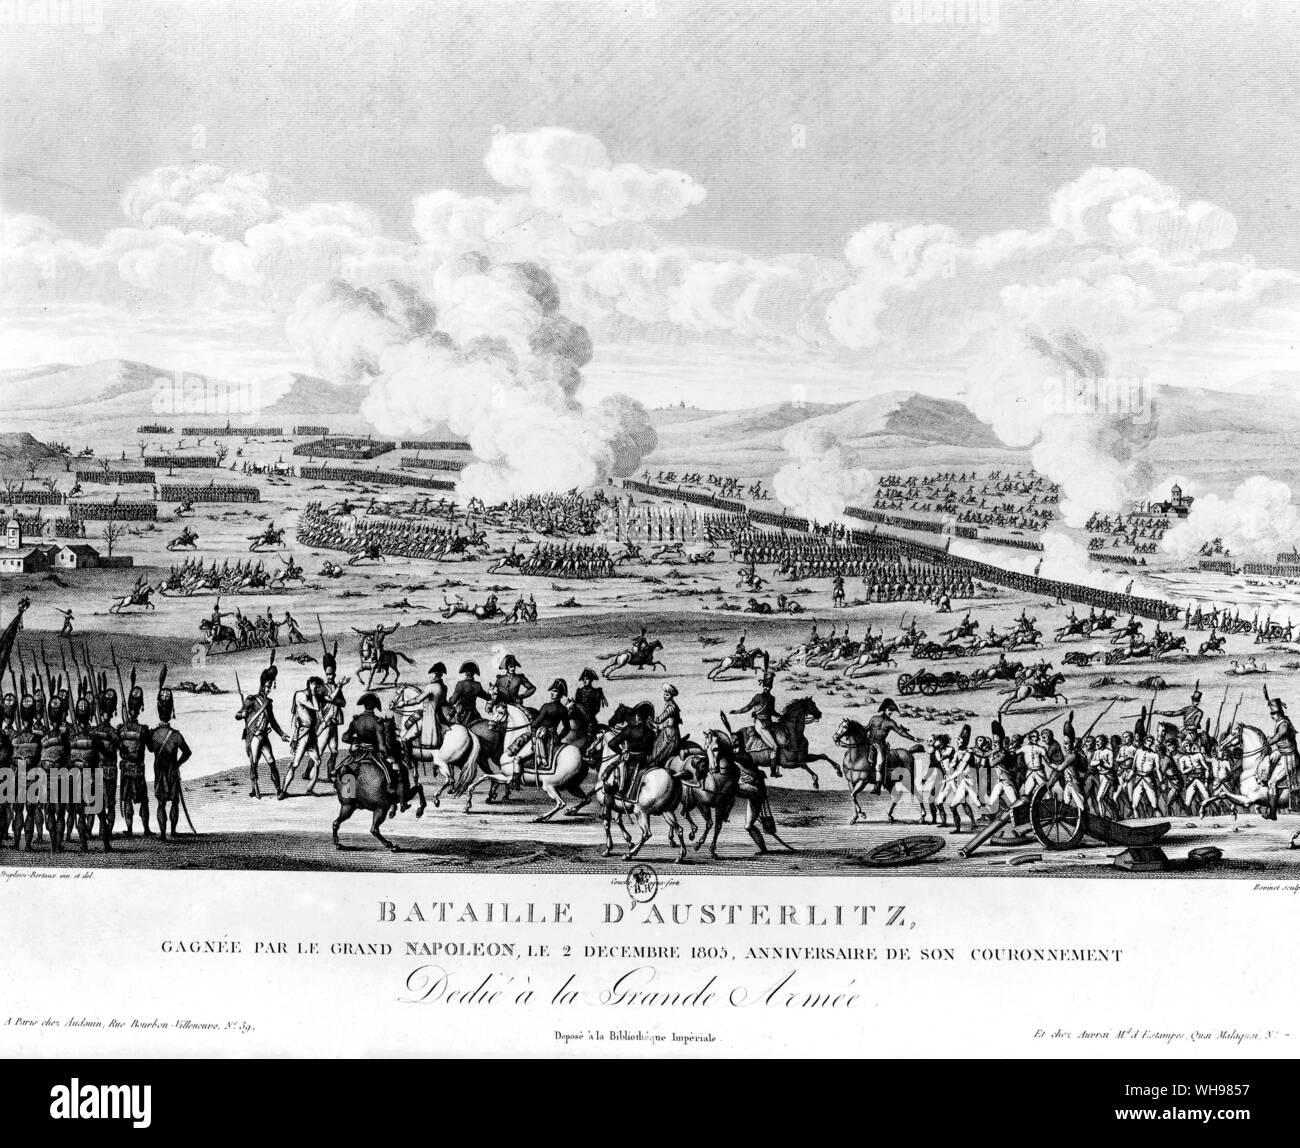 Warfare/ Bataille d'Austerlitz, 1805. Guerres napoléoniennes. Banque D'Images